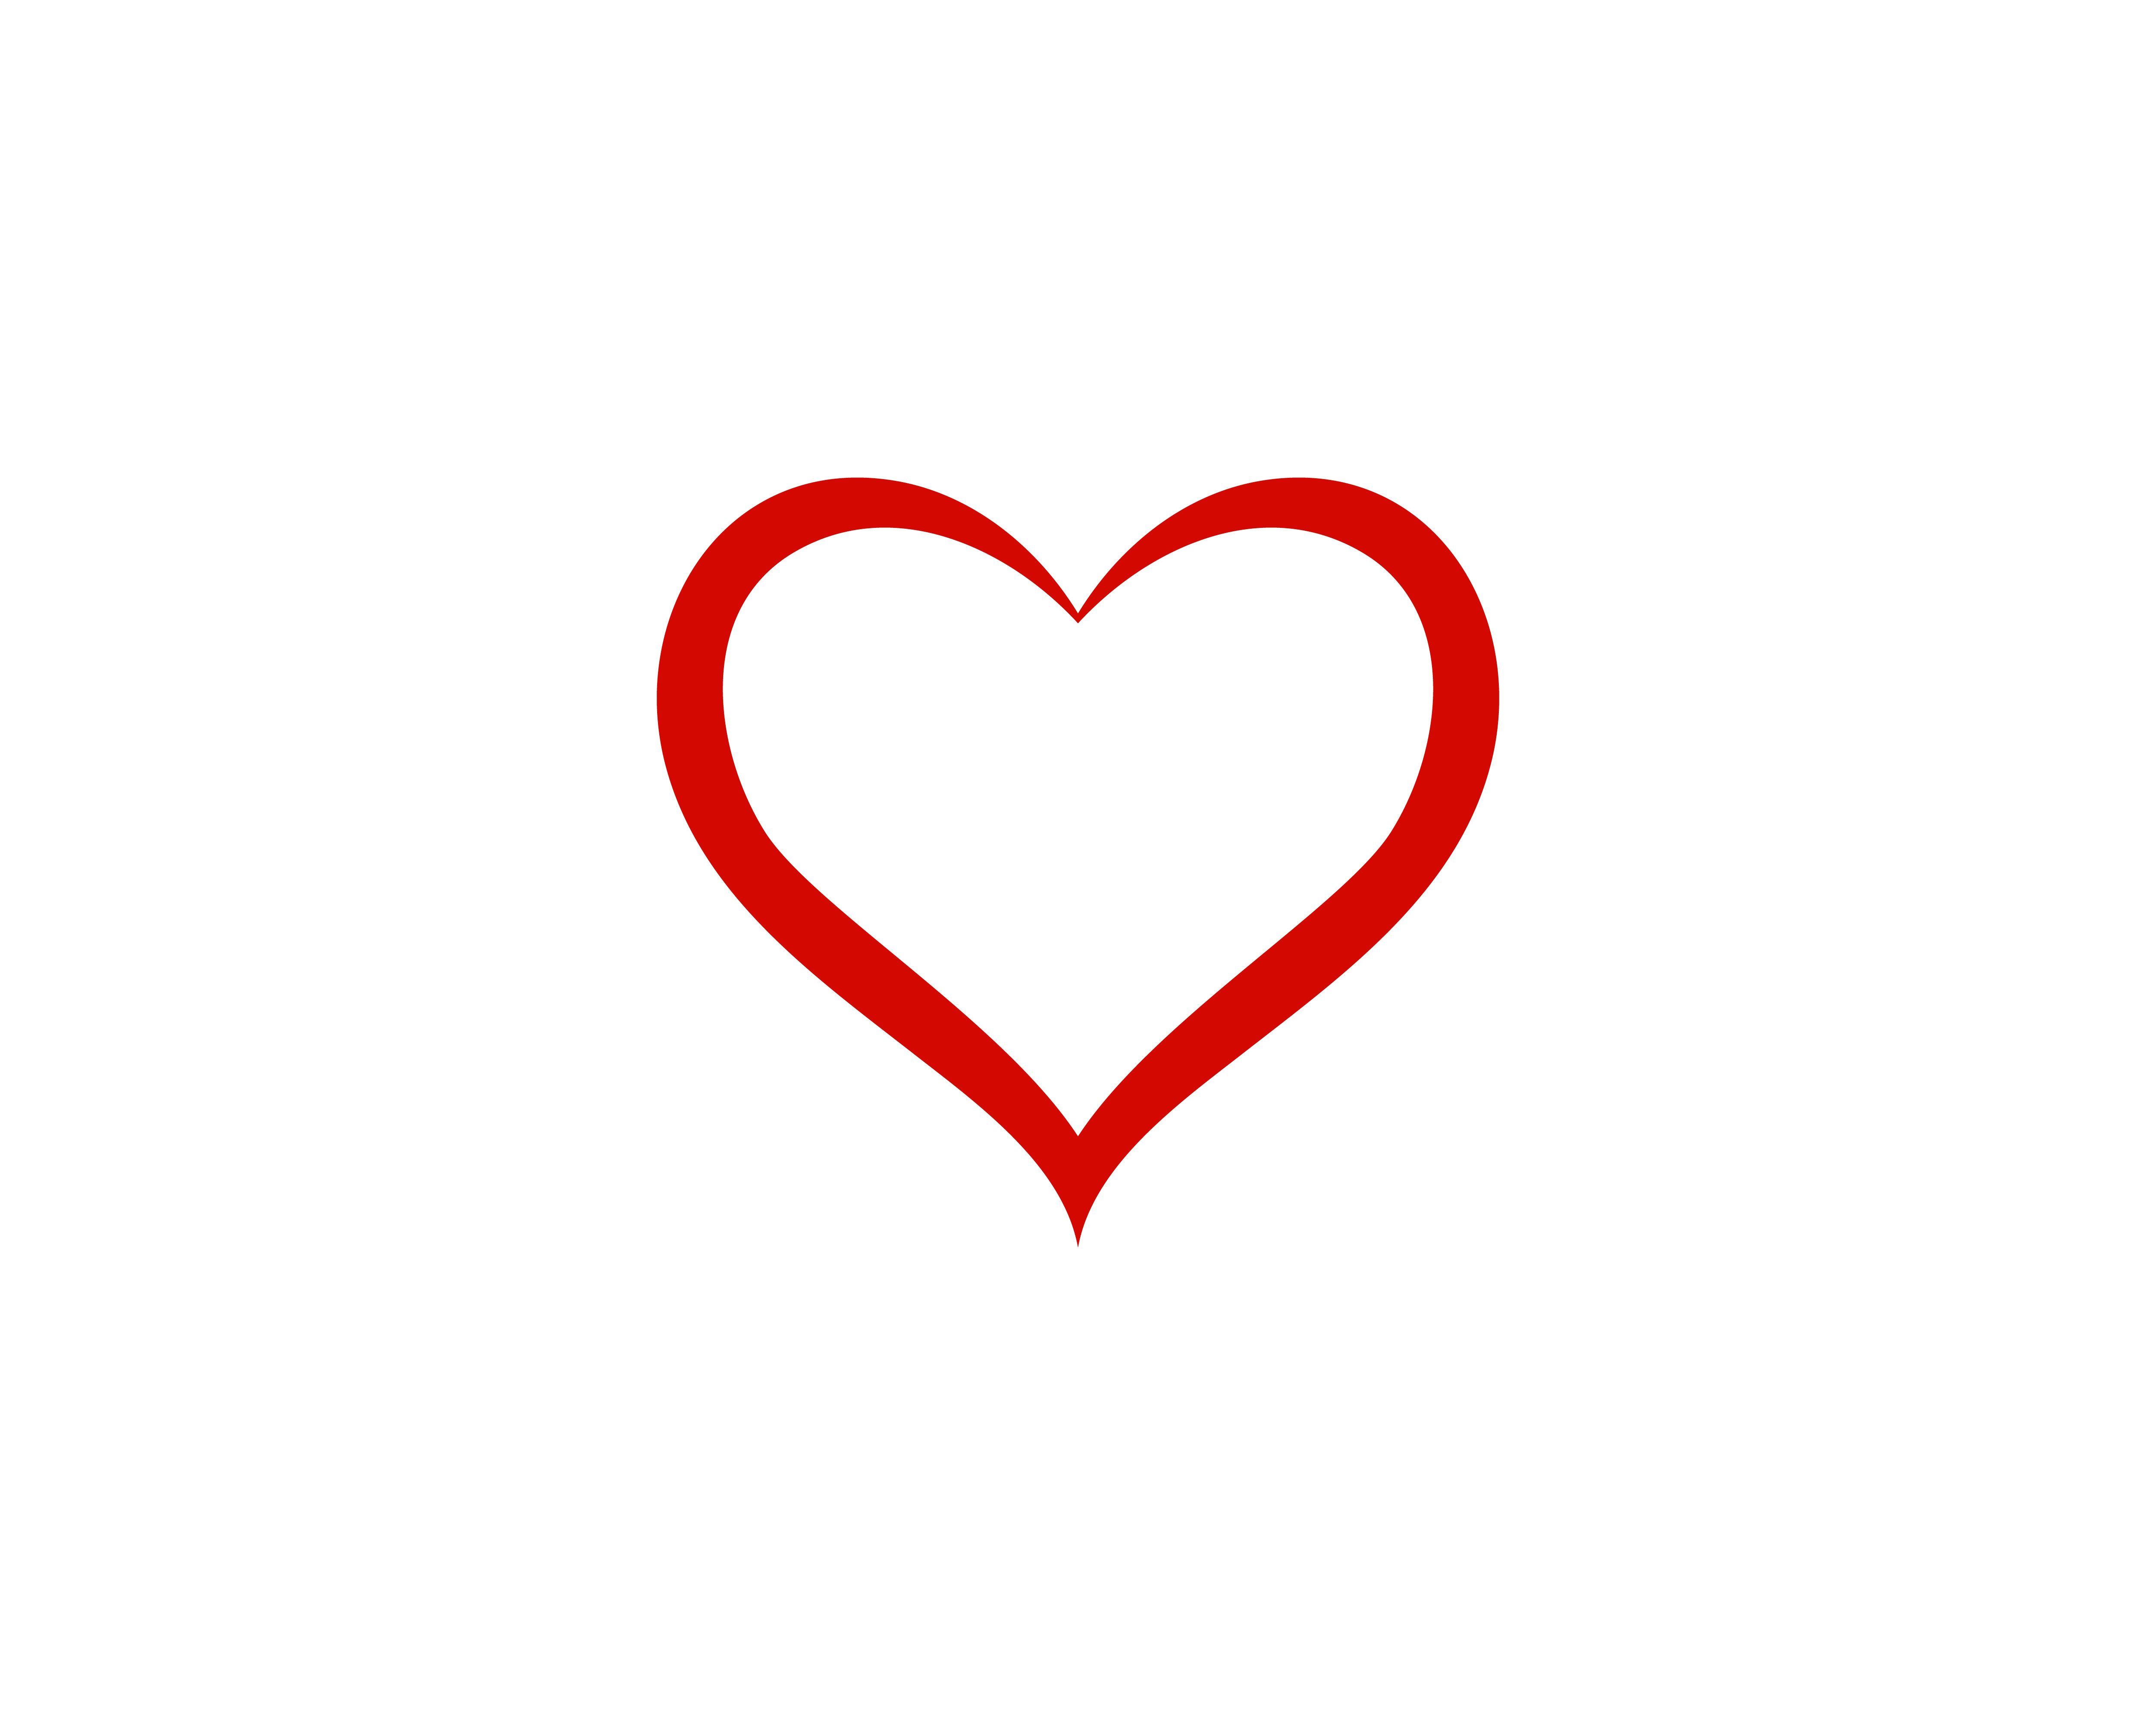 Download LOve cuore logo e simbolo vettoriale - Scarica Immagini ...